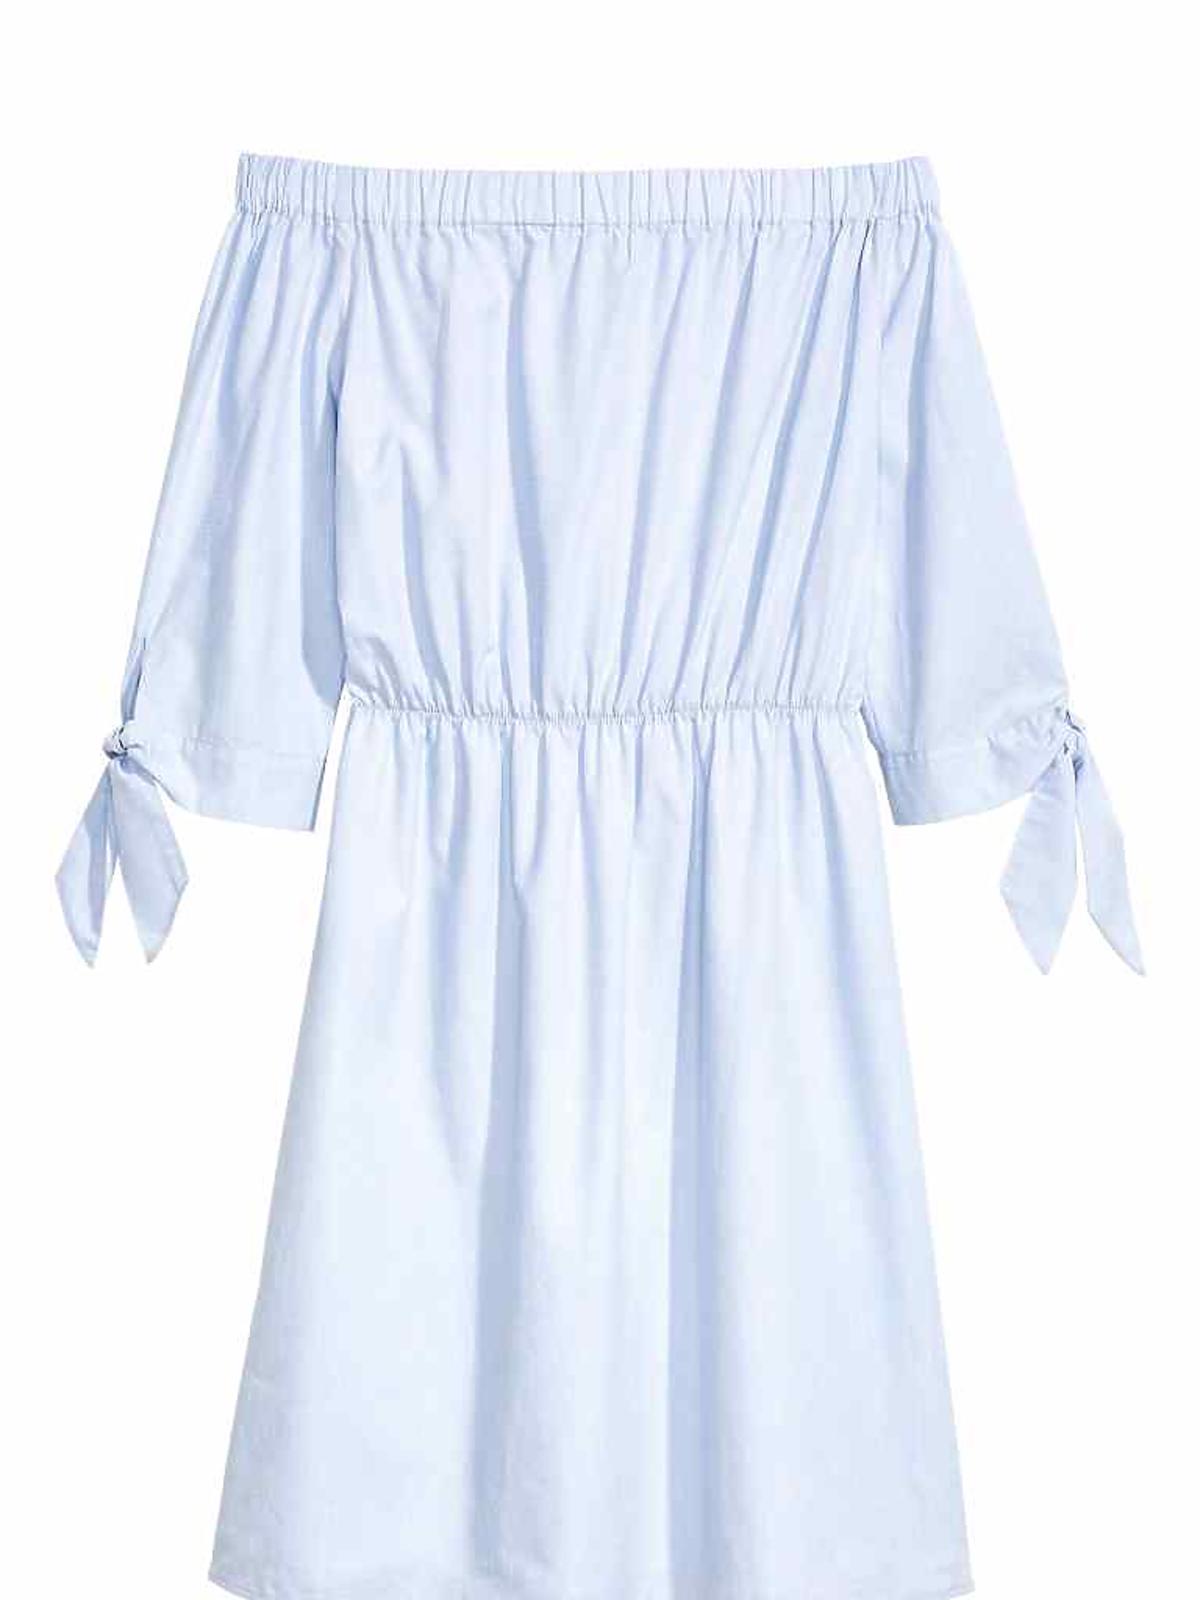 Biała sukienka z odkrytymi ramionami - H&M - 129 zł